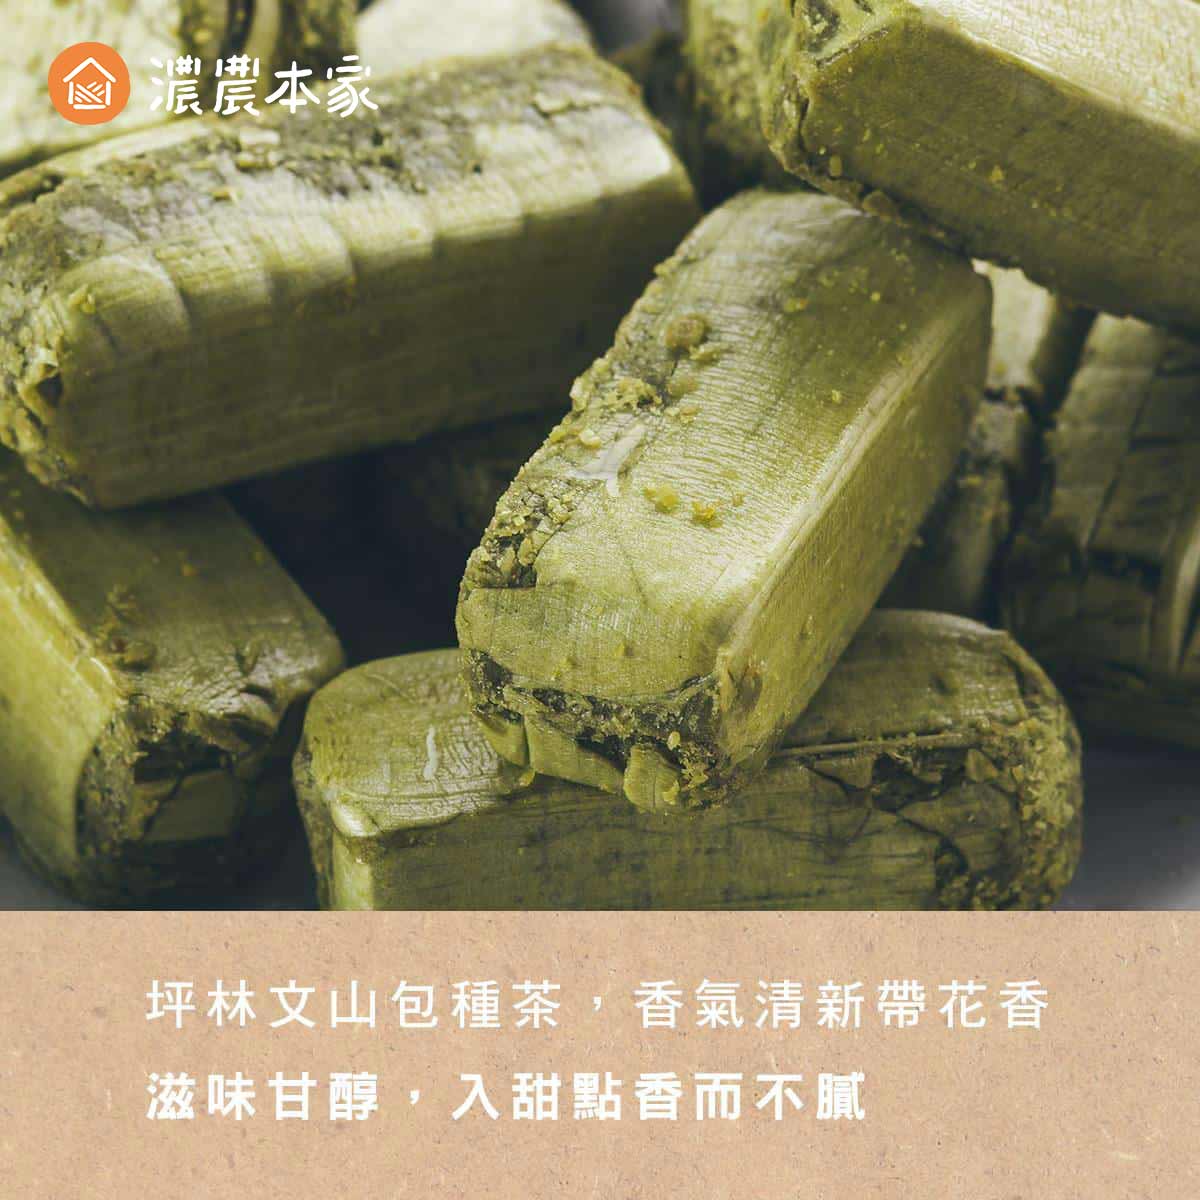 辦公室團購小零食推薦人氣台灣包種茶酥